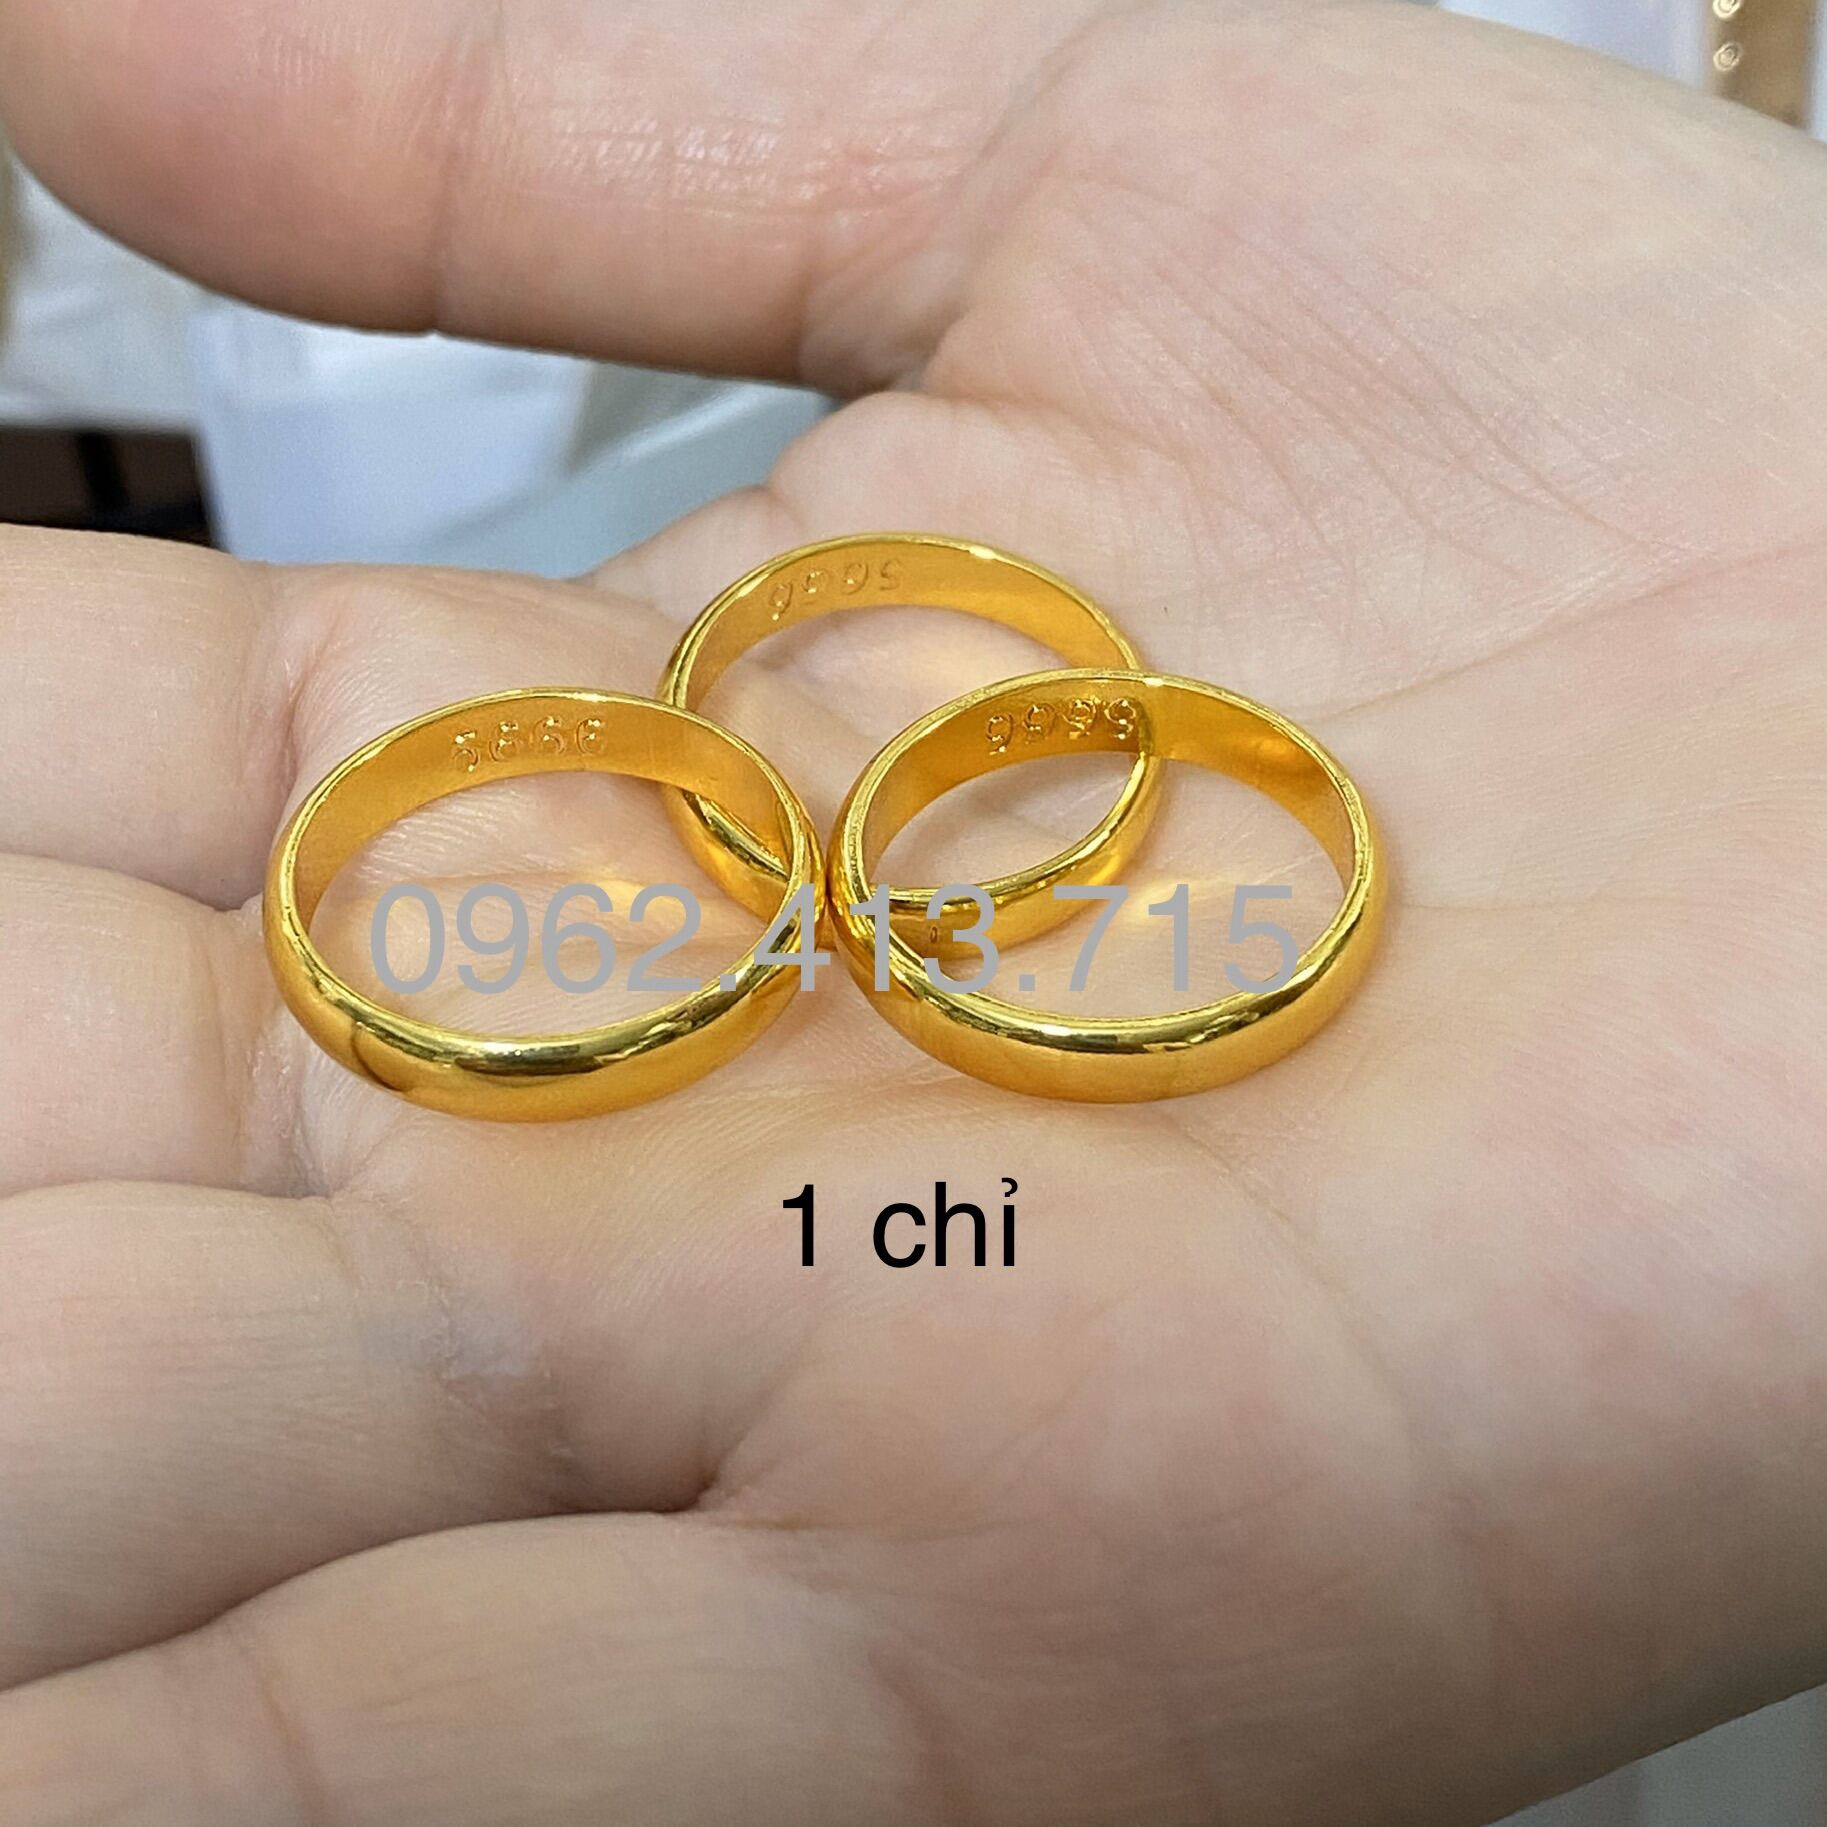 3 mẫu nhẫn cưới vàng 18k trơn được ưa chuộng hiện nay | Apj.vn